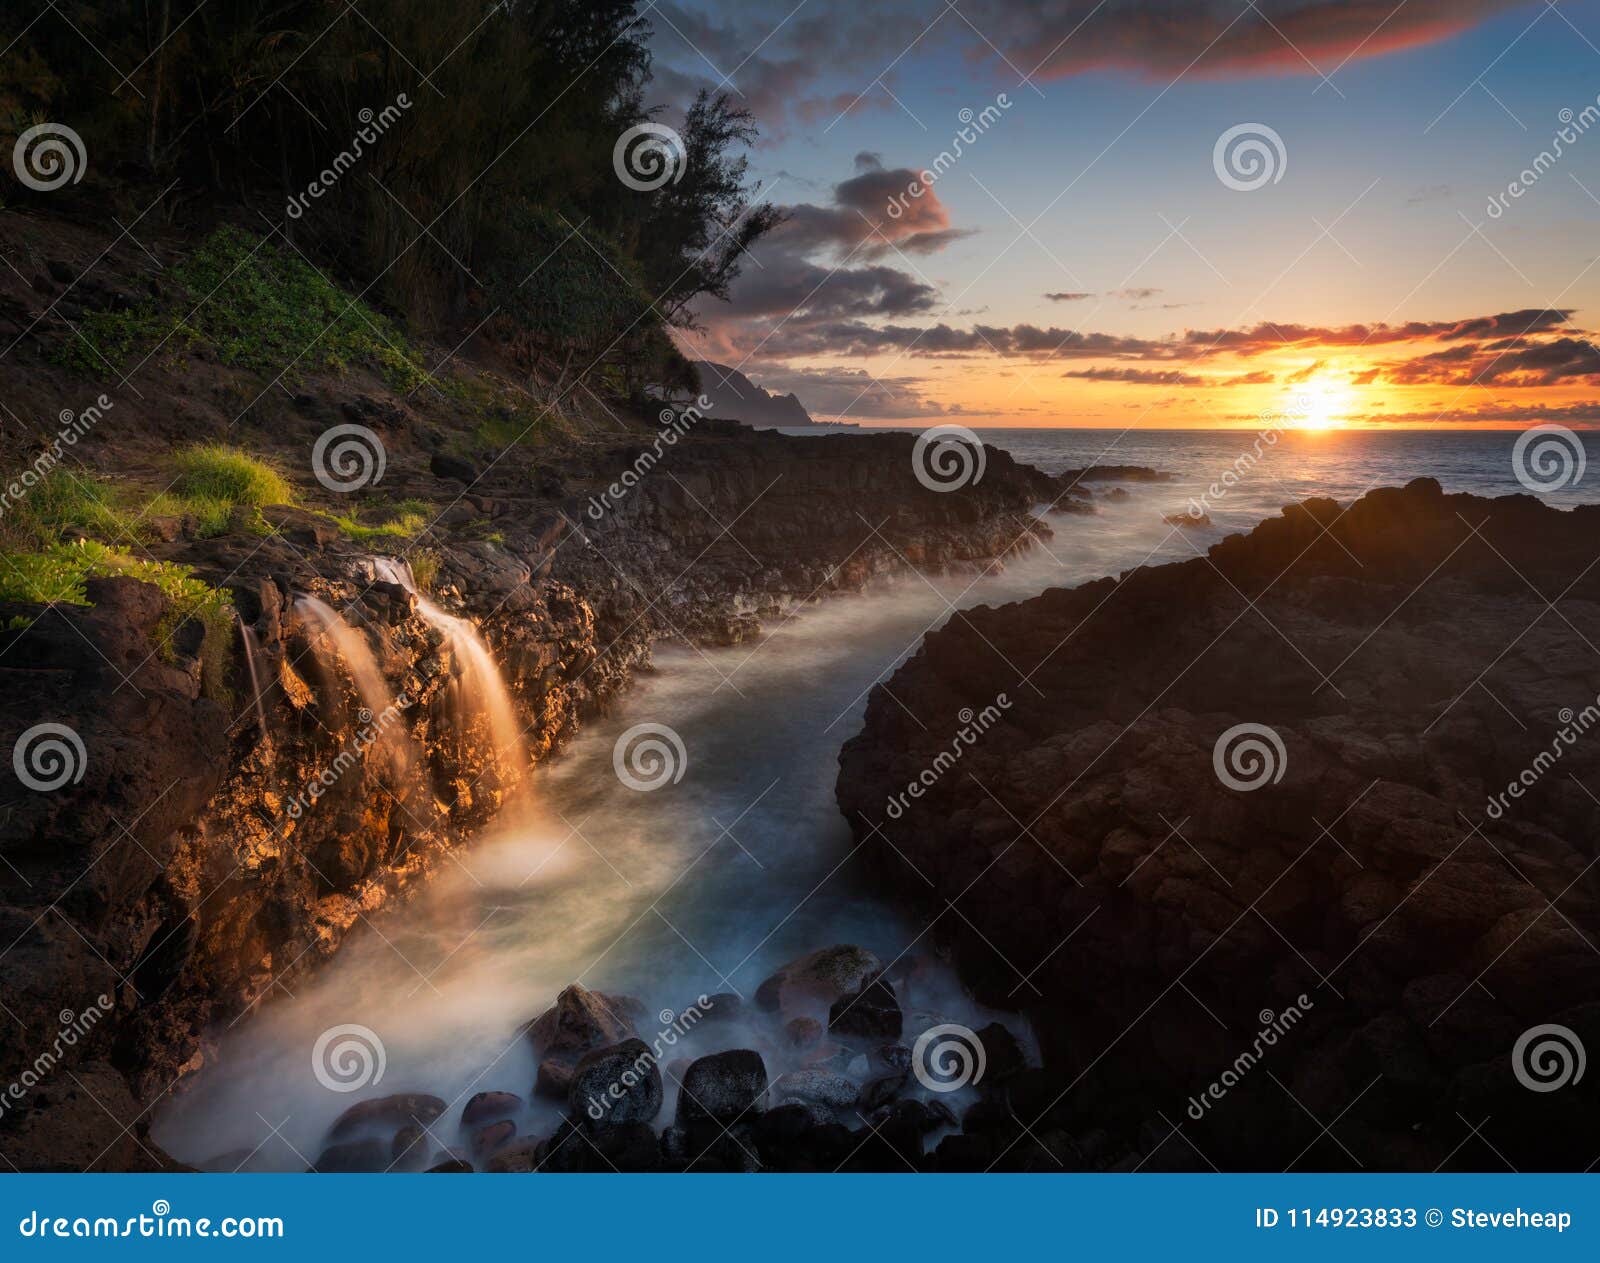 Stock photo of sunset over the ocean on Kauai